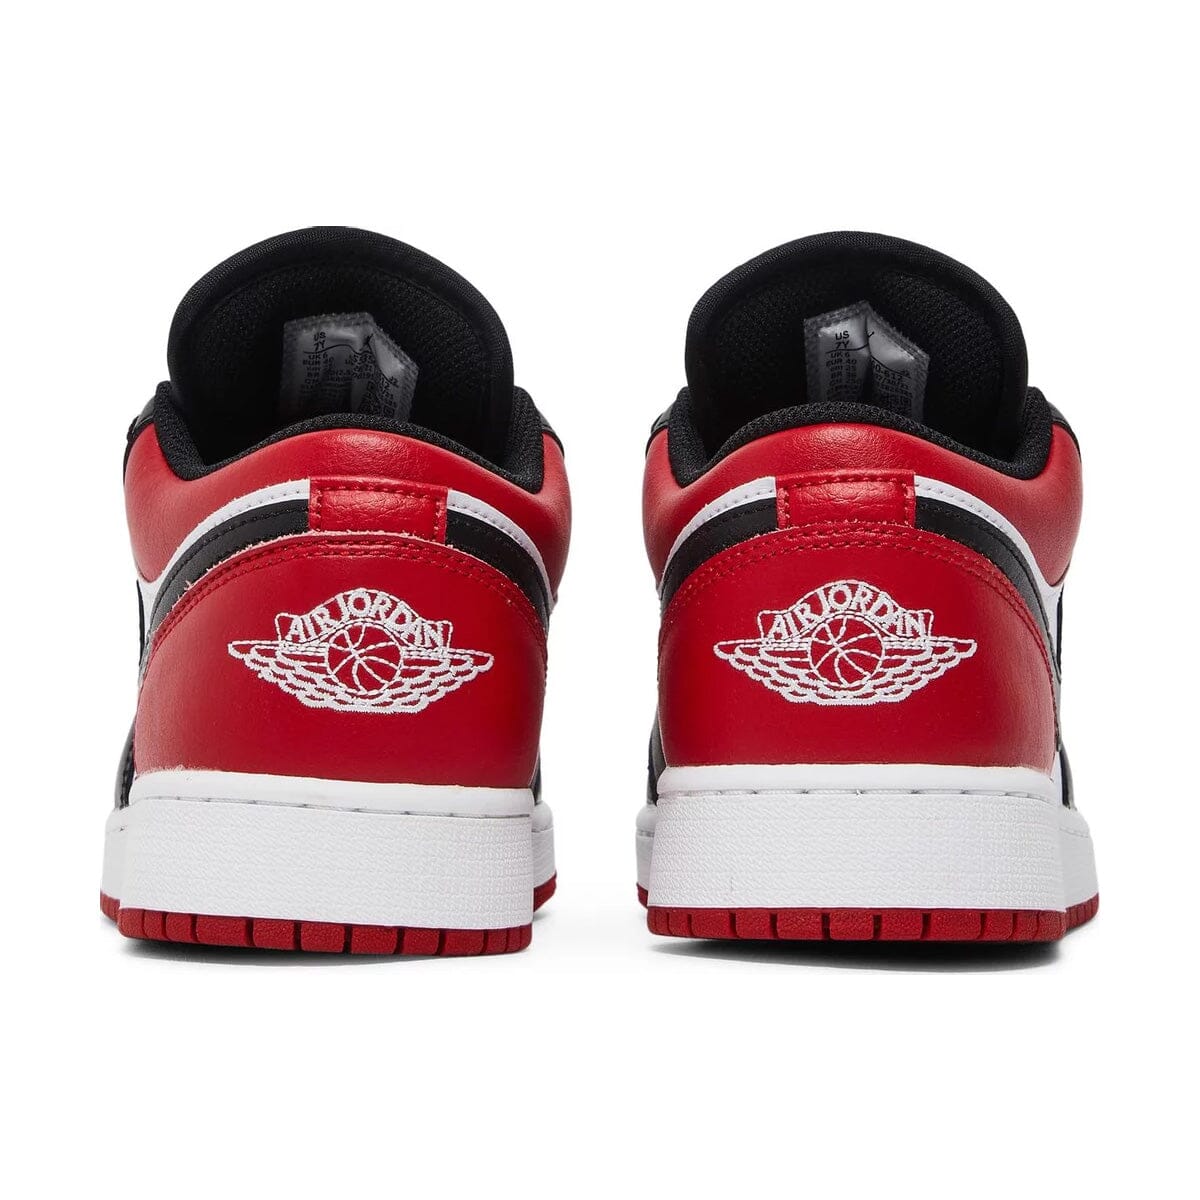 Air Jordan 1 Low Bred Toe 2.0 Air Jordan 1 Low Blizz Sneakers 